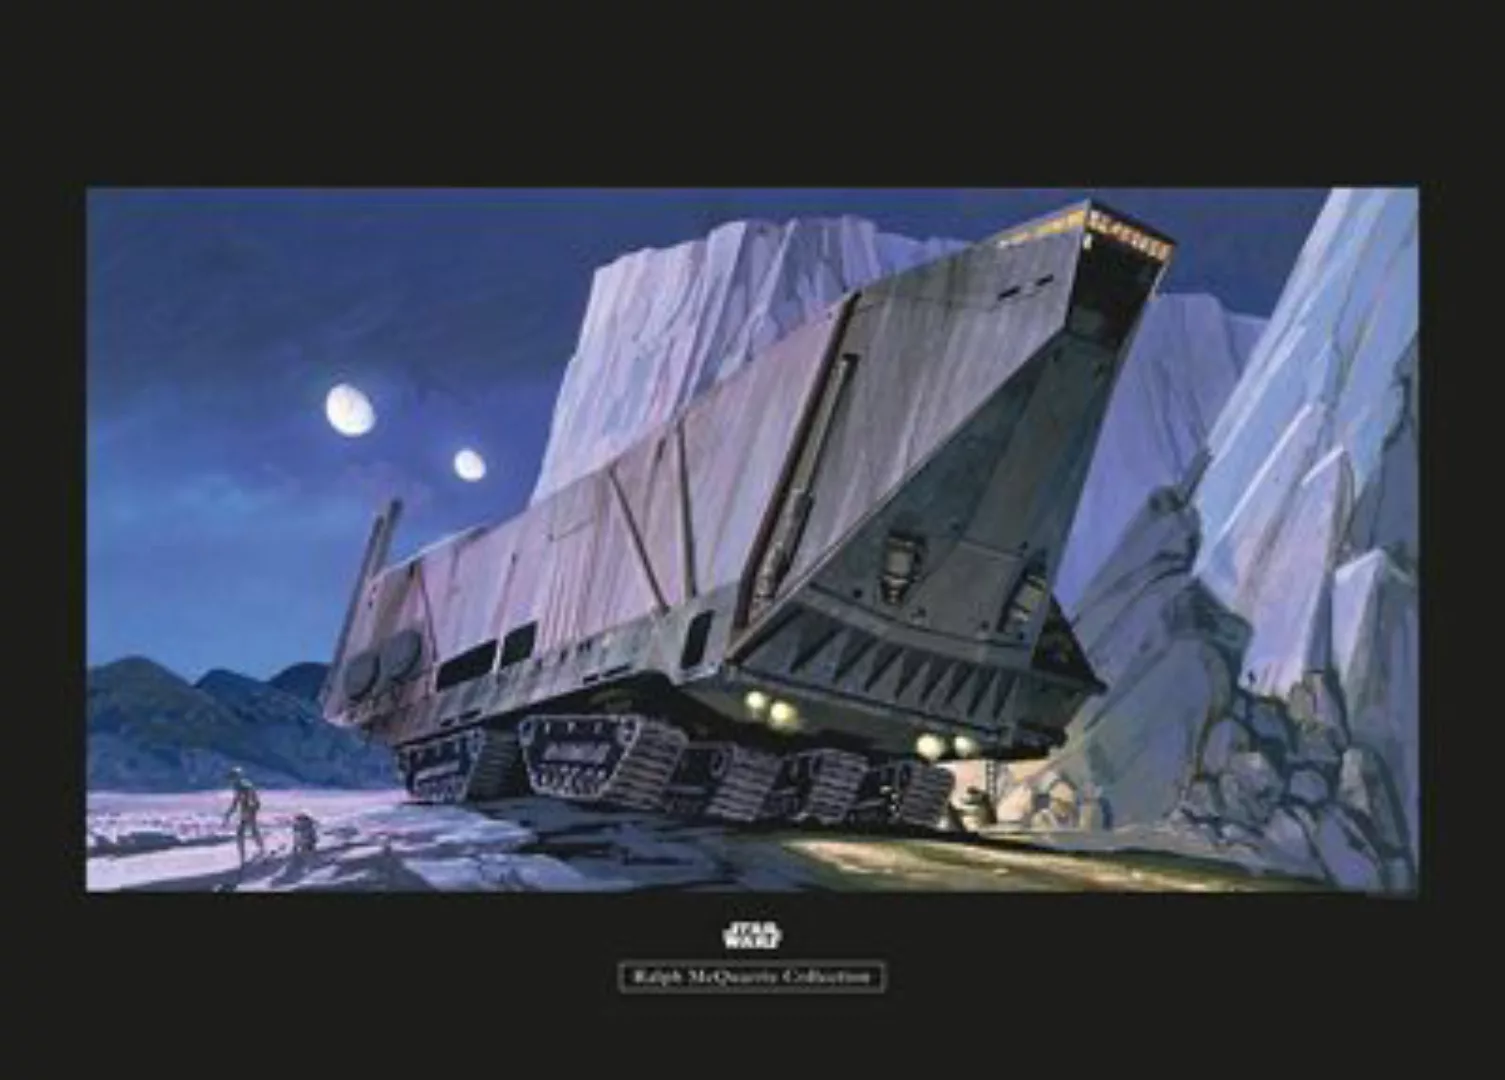 KOMAR Wandbild - Star Wars Classic RMQ Sandcrawler - Größe: 70 x 50 cm mehr günstig online kaufen